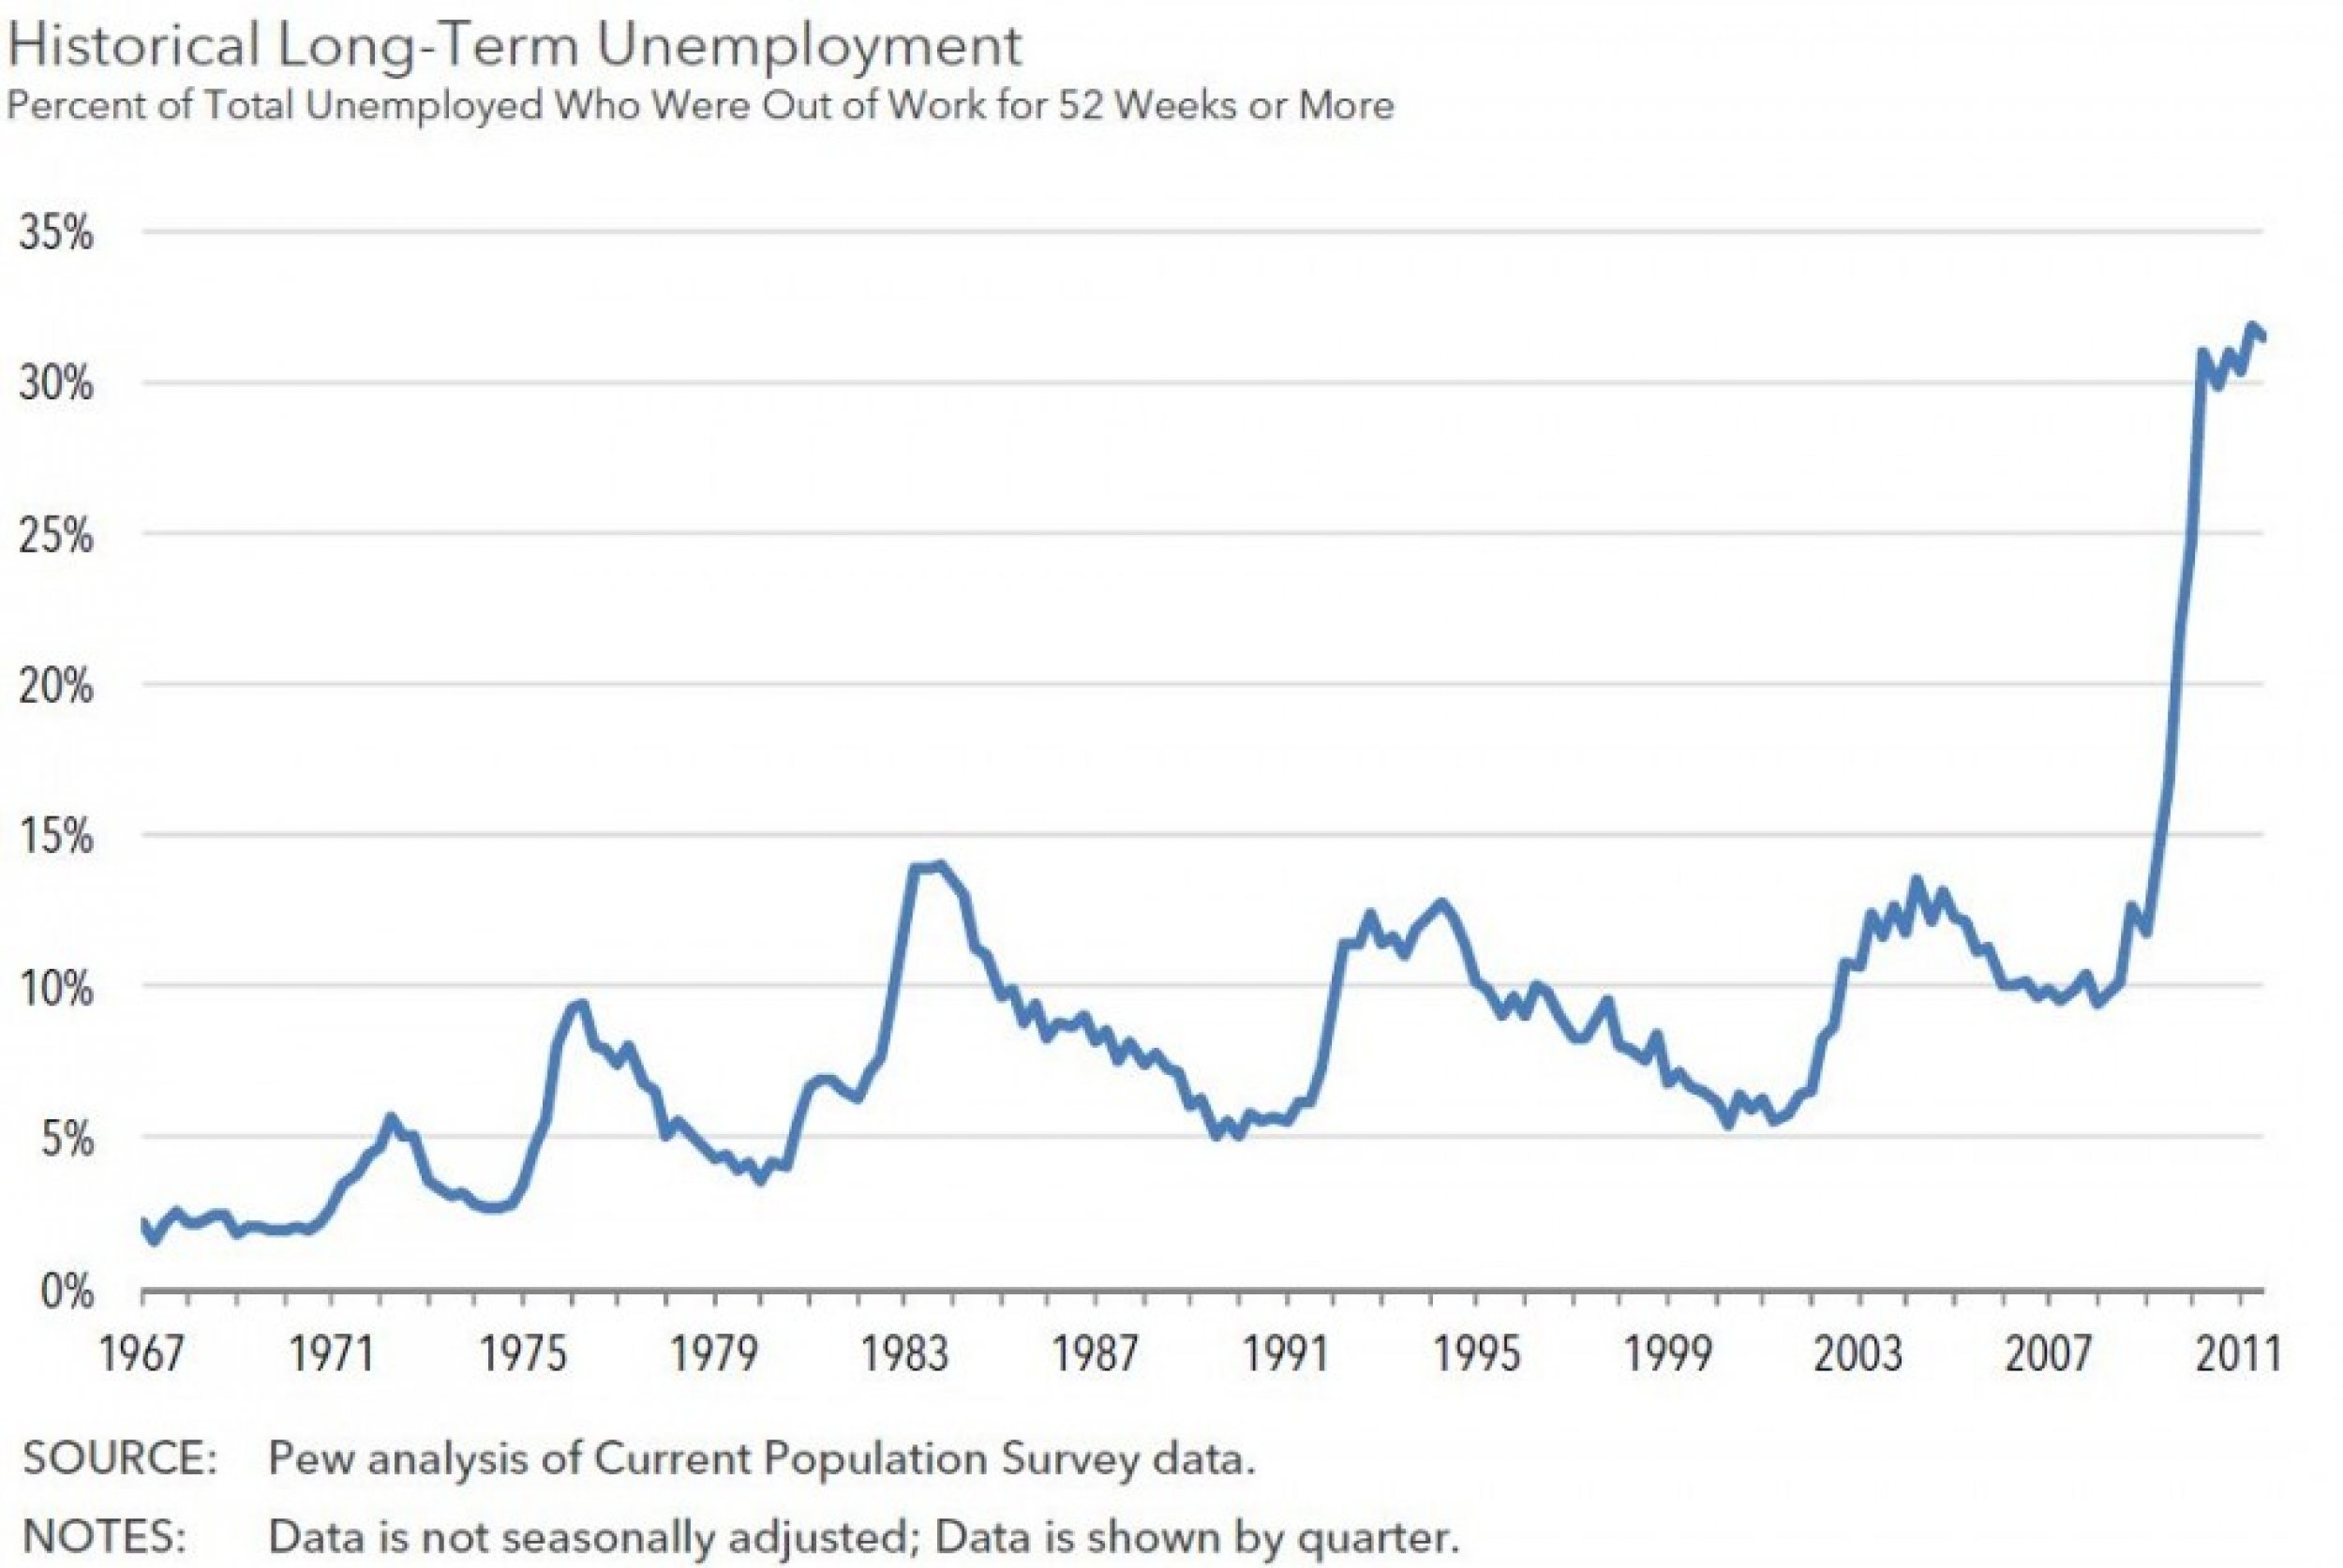 Historical long-term unemployment